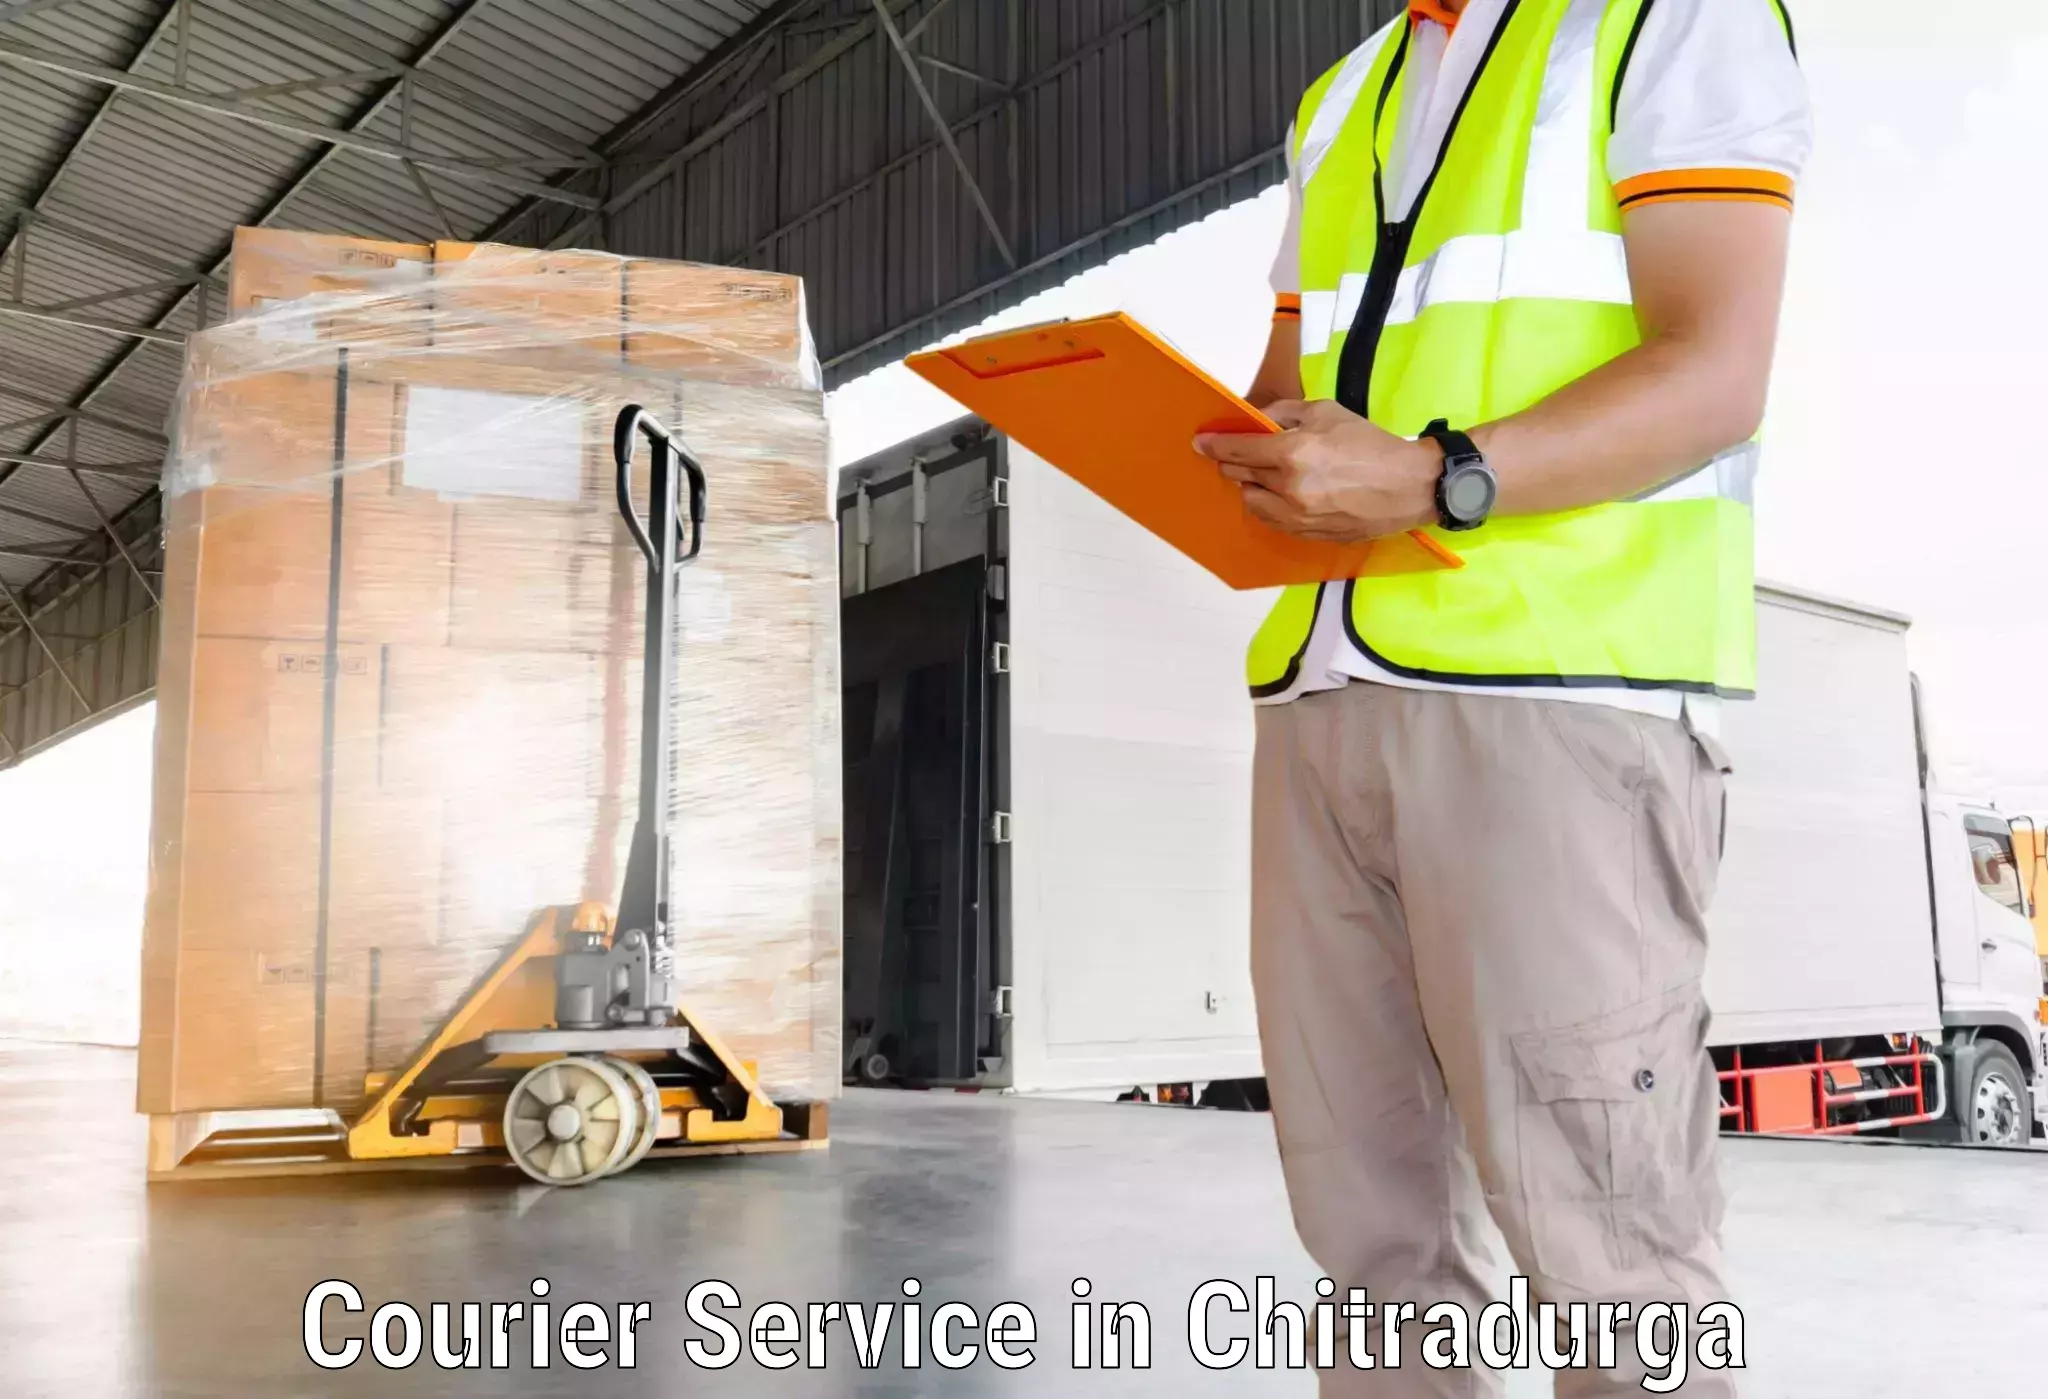 Customized shipping options in Chitradurga